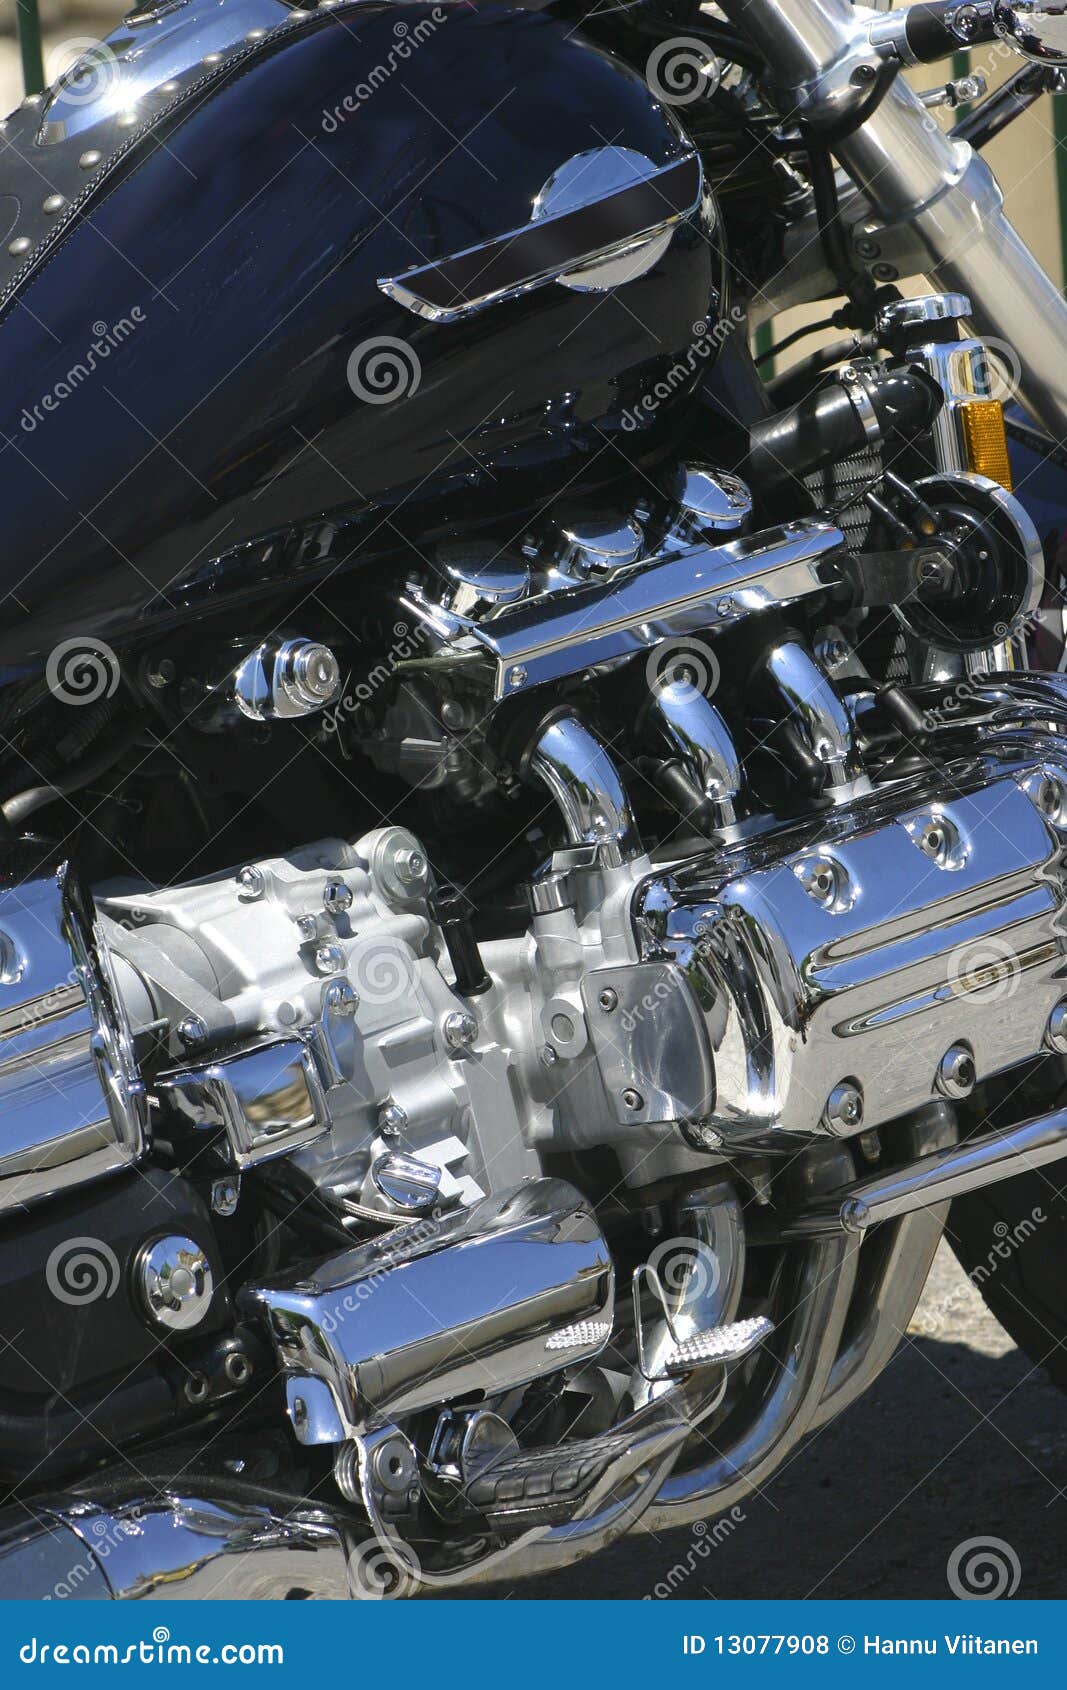 chromed engine